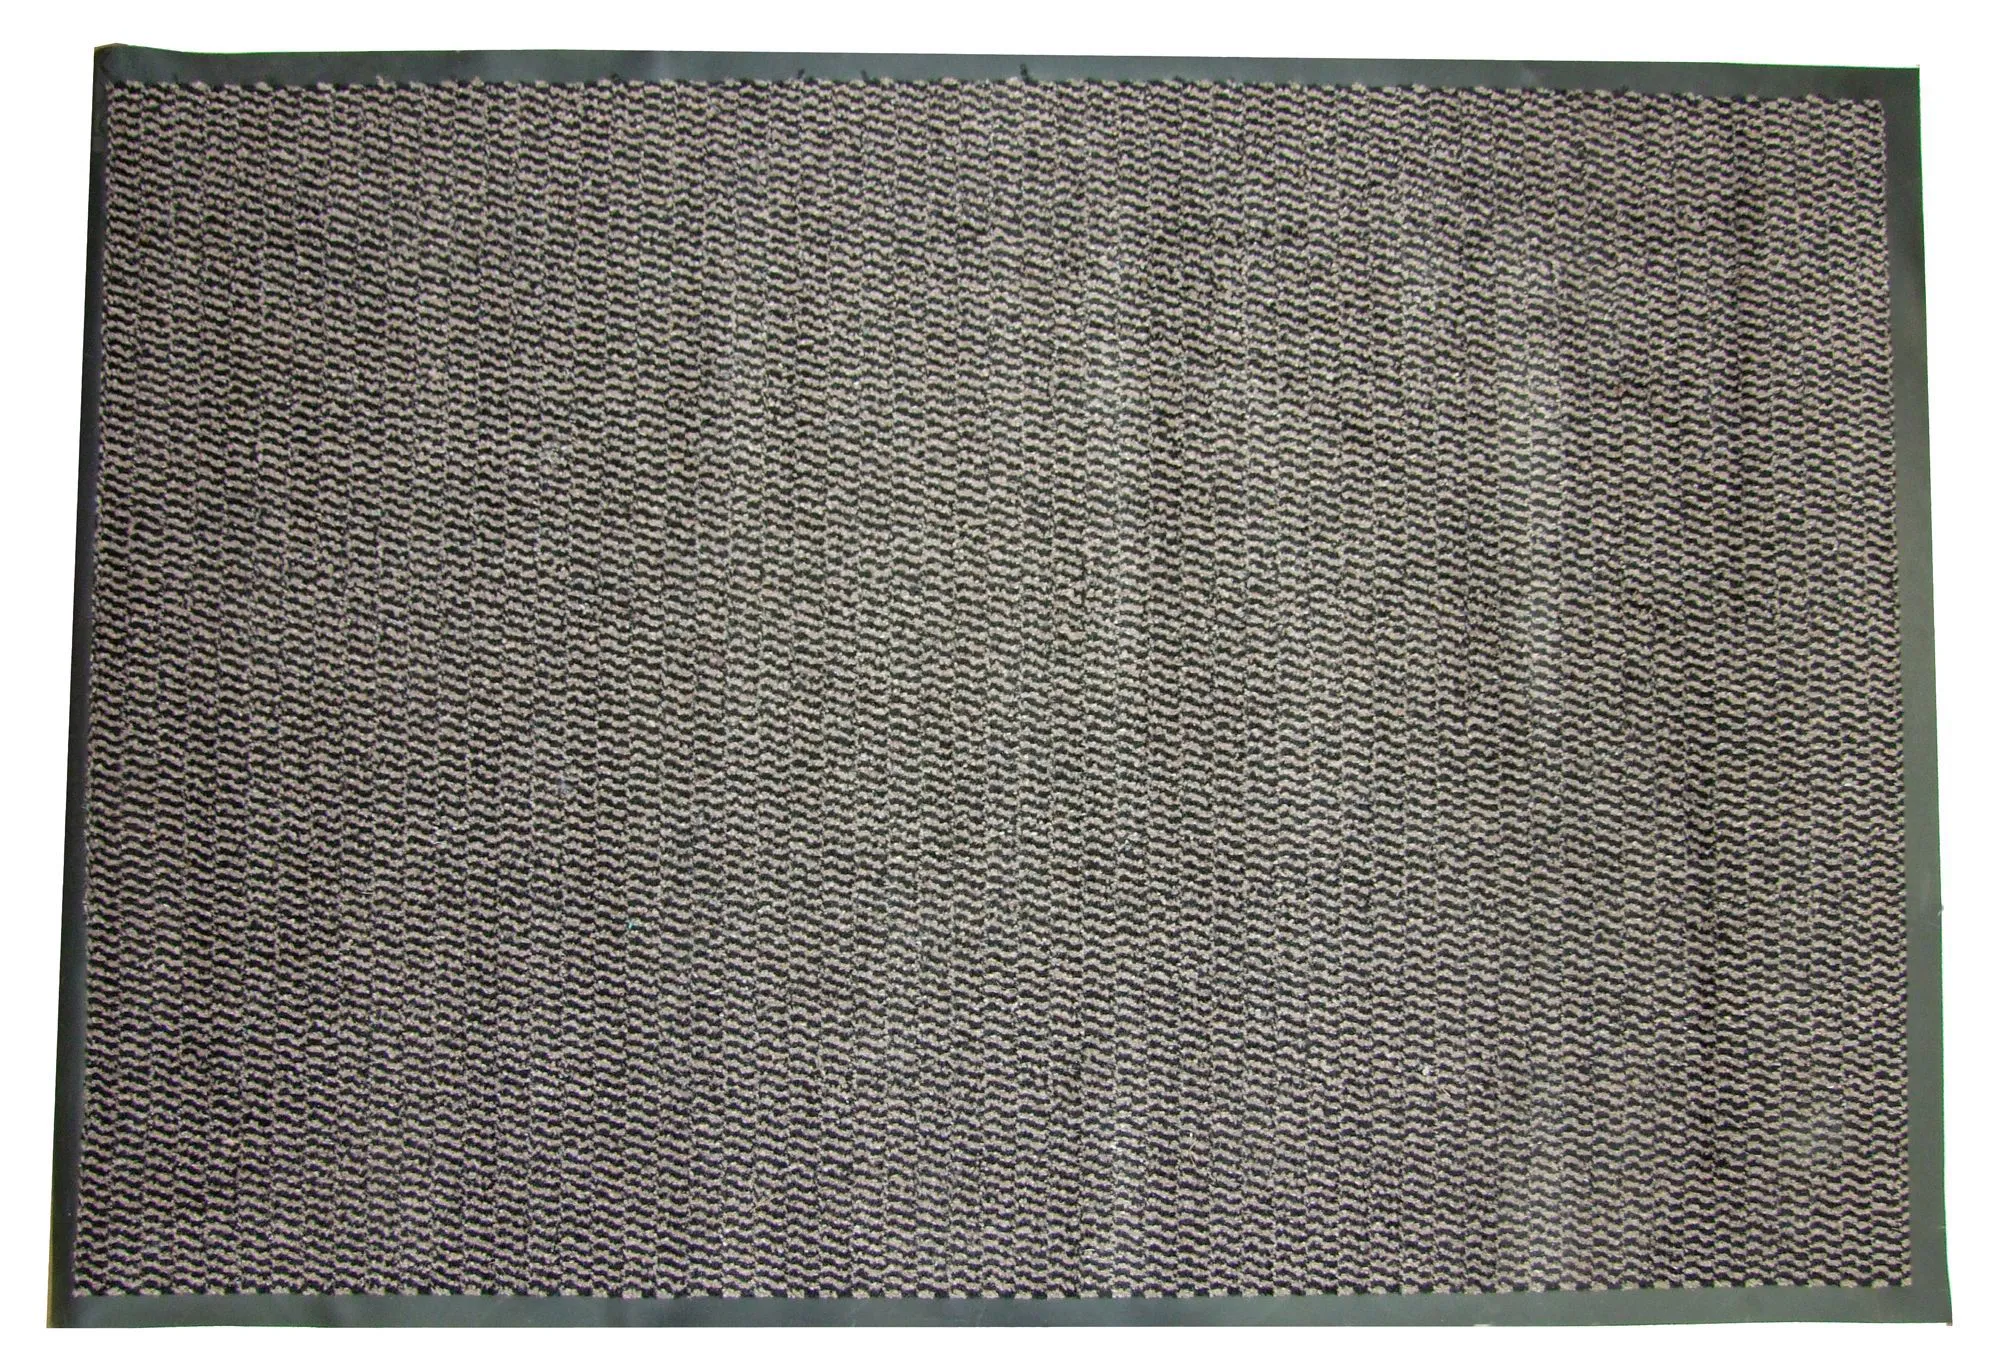 Diall Beige Polypropylene Door mat (L)0.8m (W)0.5m